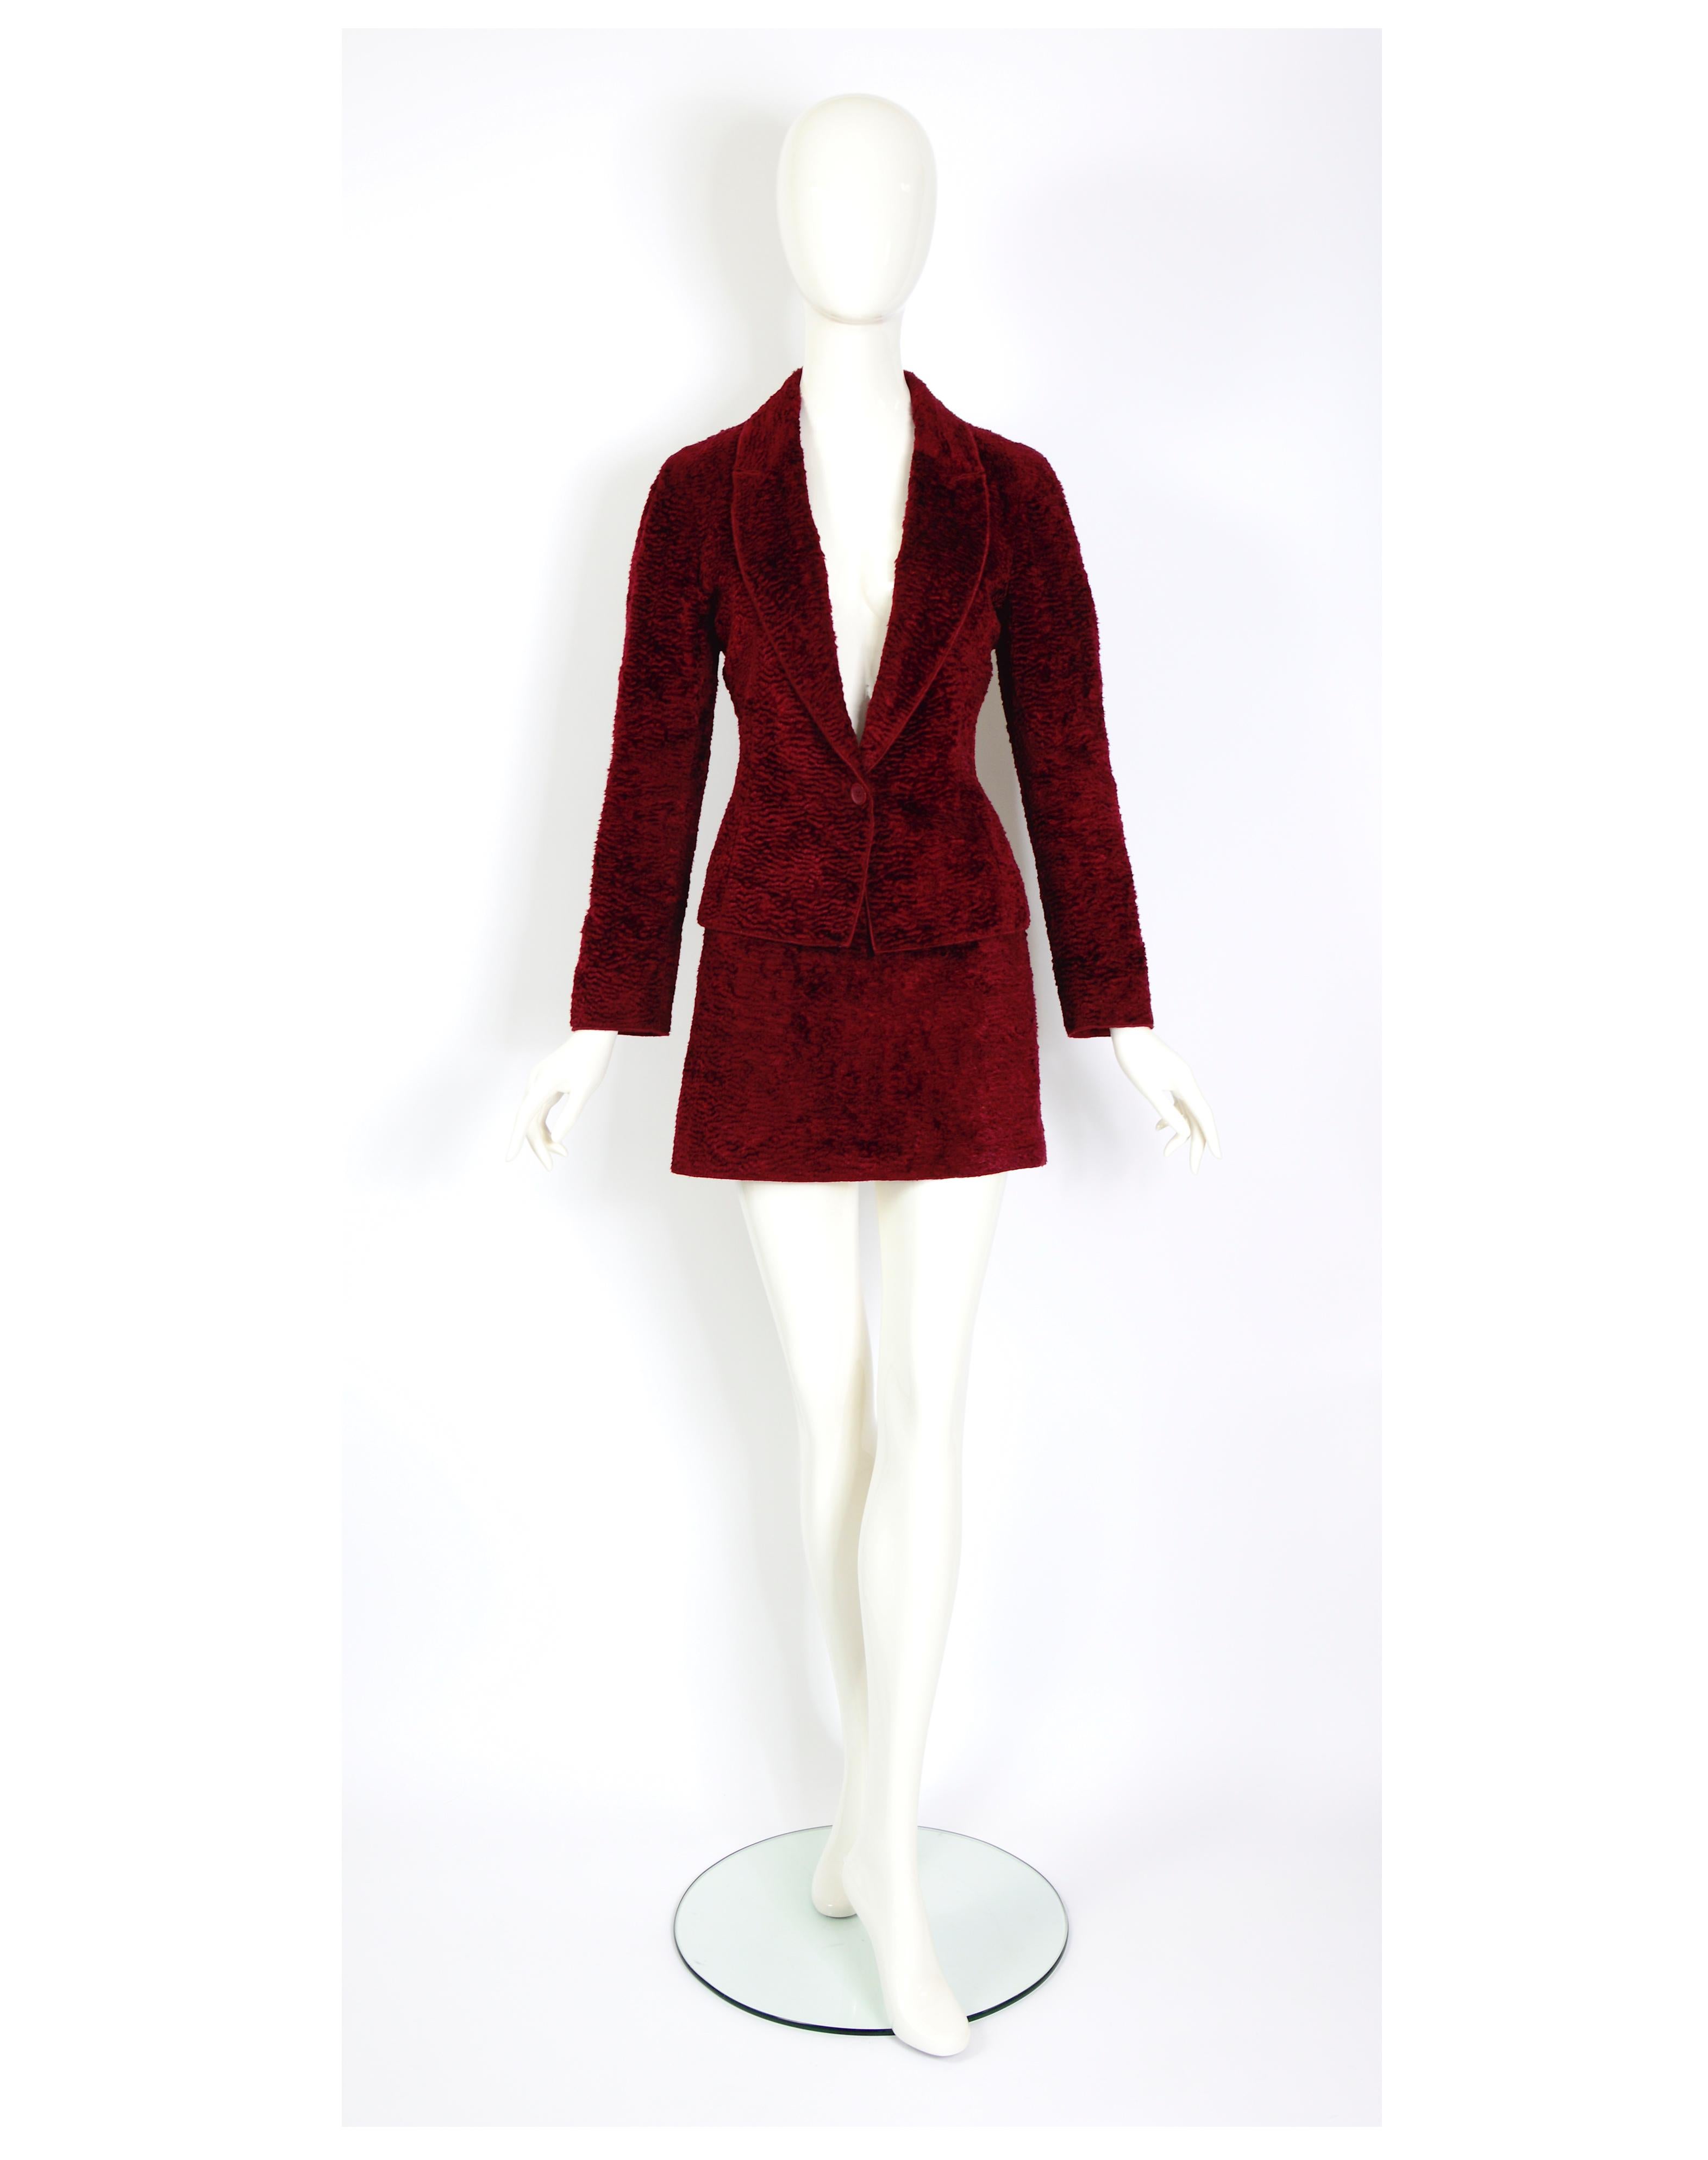 VERLAINE By présente un exquis et intemporel tailleur vintage des années 1990 de Rifat Ozbek, composé d'une veste de tailleur et d'une mini jupe a-line, réalisé dans un riche velours de coton léger bordeaux, imitant la fausse fourrure